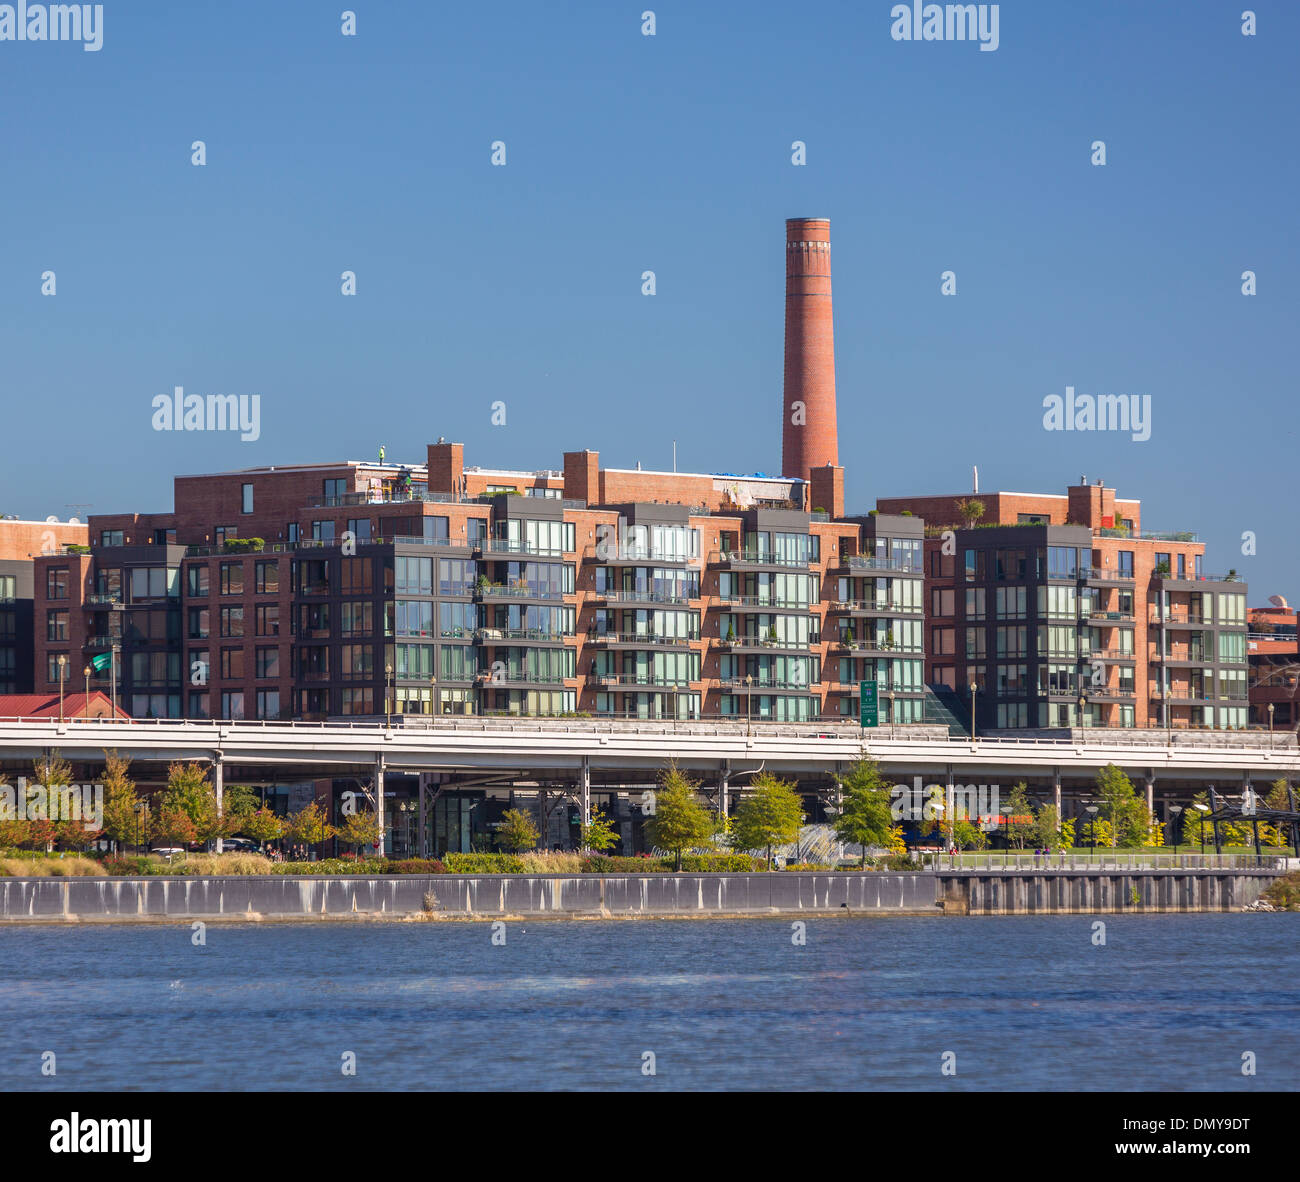 WASHINGTON, DC, USA - Waterfront-Gebäude in Georgetown und erhöhten Whitehurst Freeway am Potomac River. Stockfoto